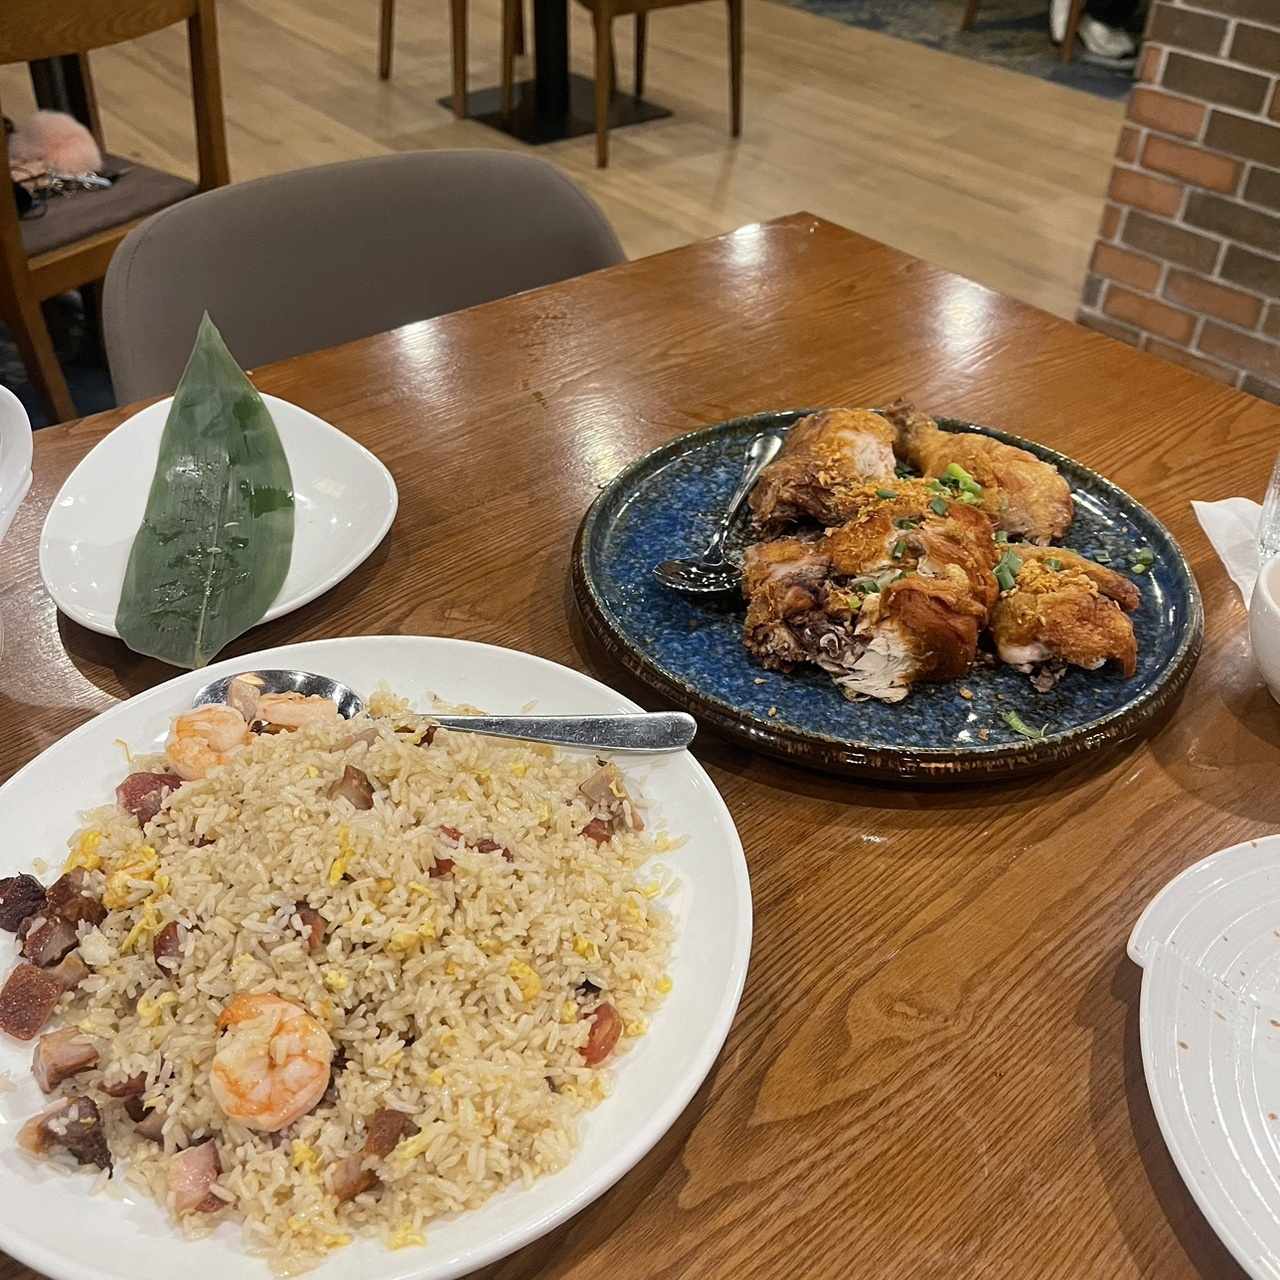 arroz younchao y gallina frita con ajo